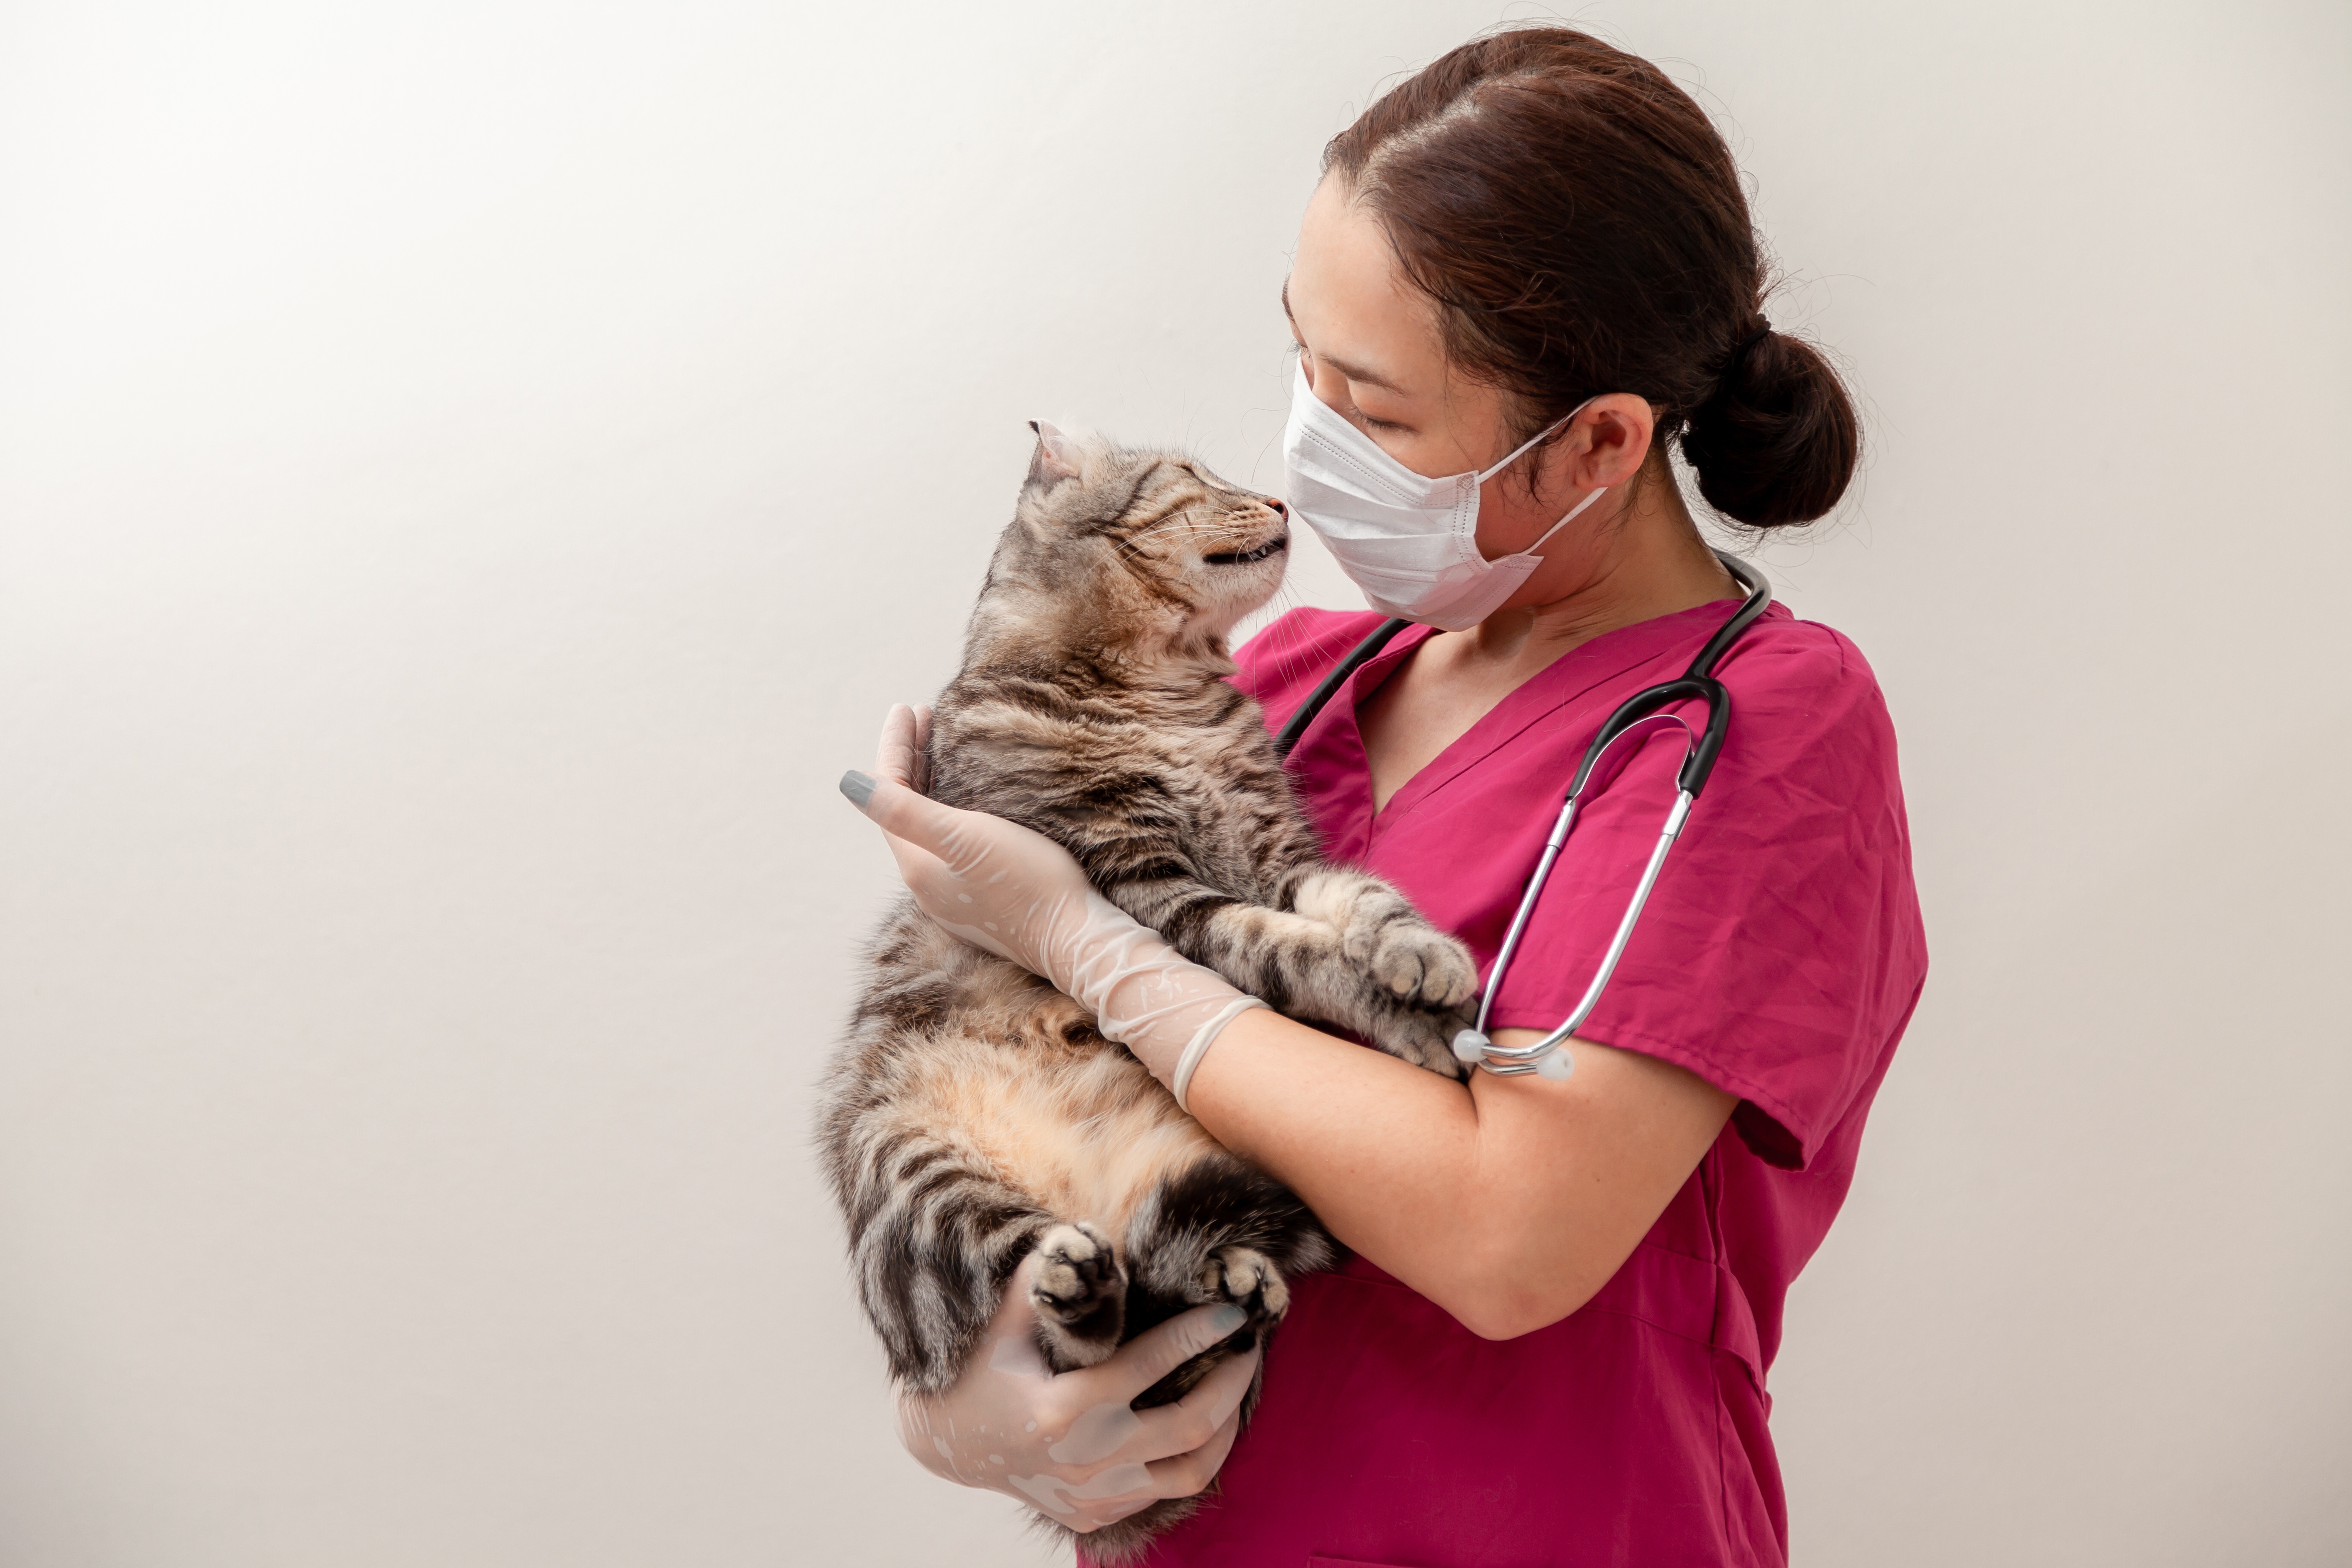 Katzen können sich mit SARS-CoV-2 infizieren, geben das Virus aber nicht an Menschen weiter.